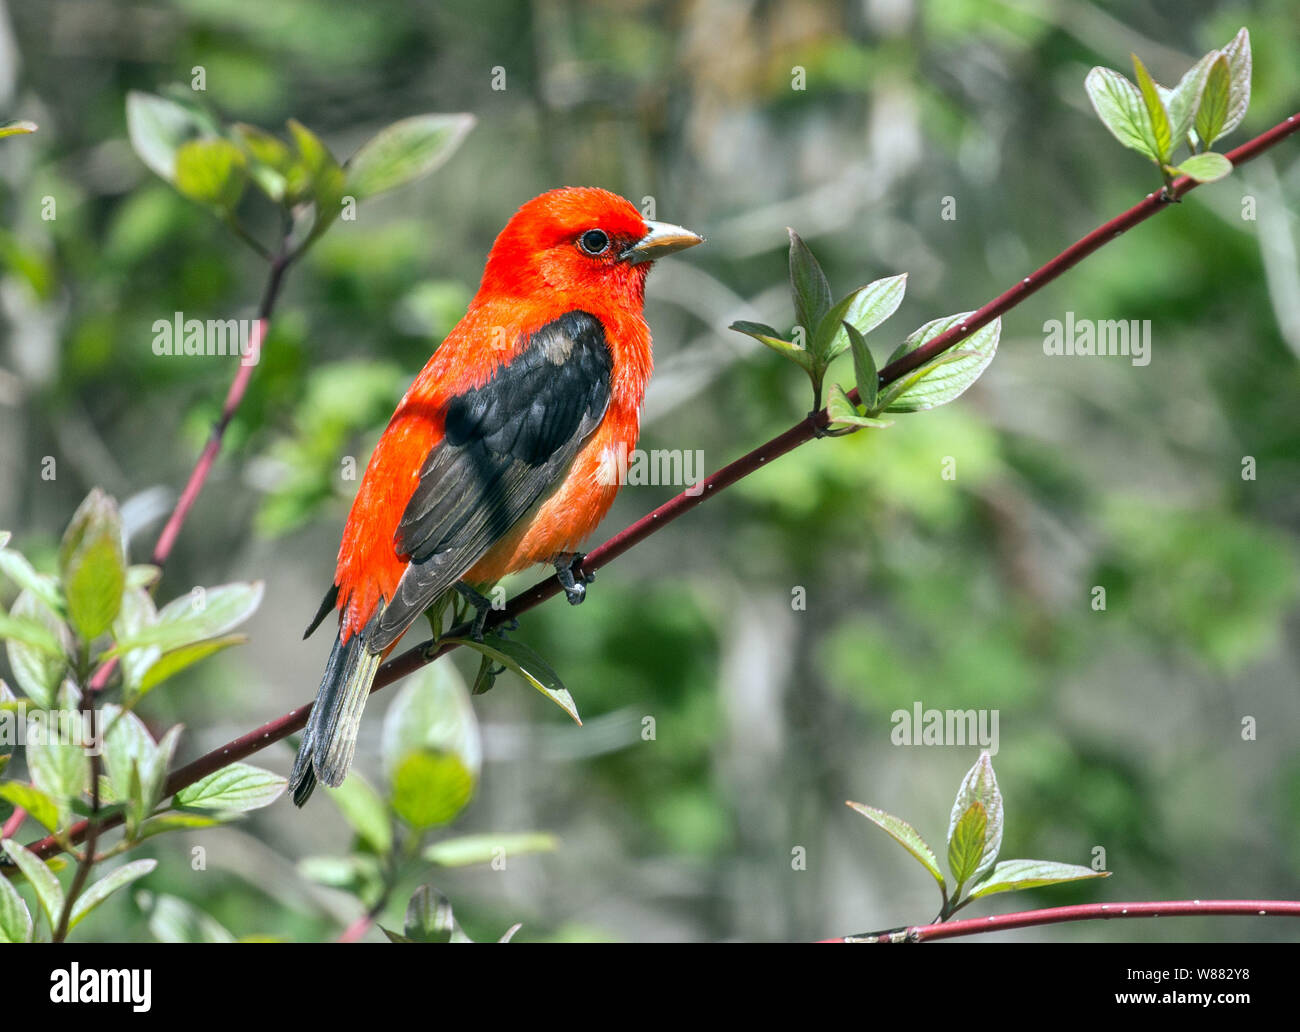 Nahaufnahme des schönen roten und schwarzen Vogel, Scarlet Tanager (Piranga olivacea) in grüner Strauch im Frühjahr Migration in Ontario, Kanada hocken Stockfoto